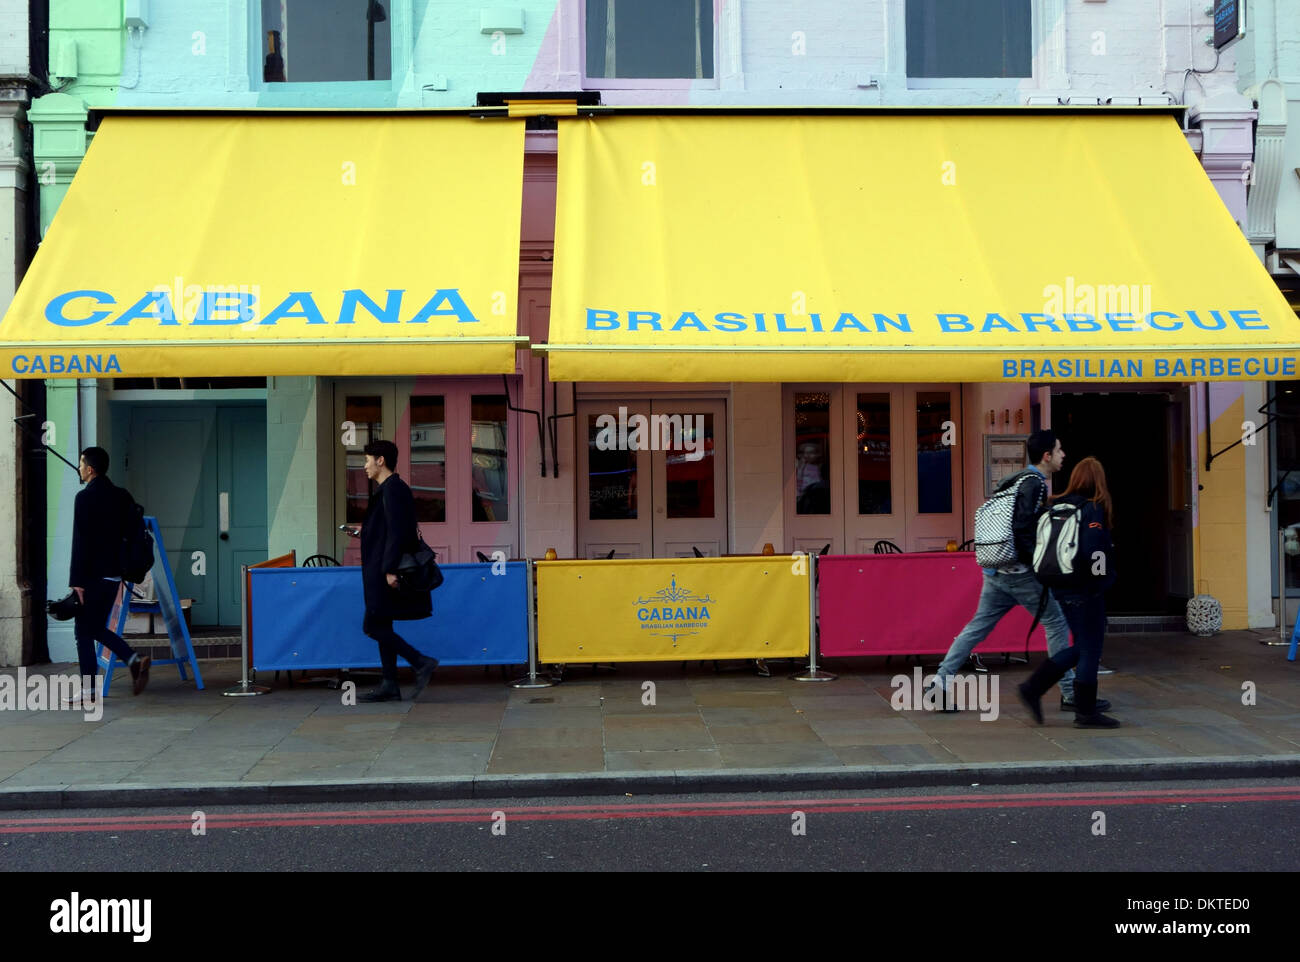 Cabana restaurant barbecue brésilien, Islington, Londres Banque D'Images